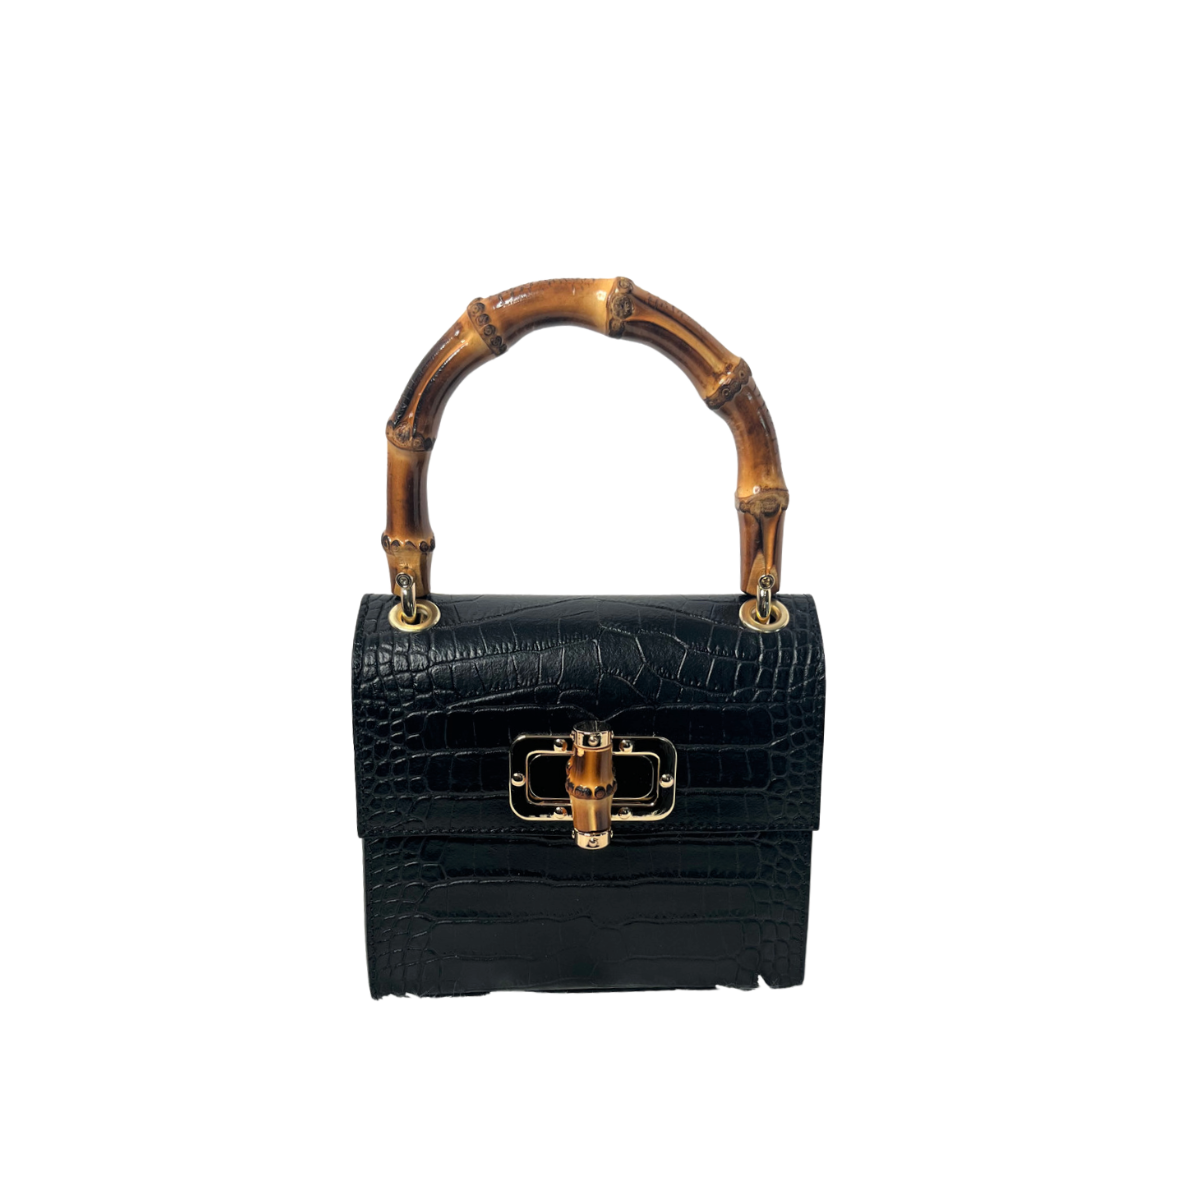 Kiwi Small Croco Handbag- Black